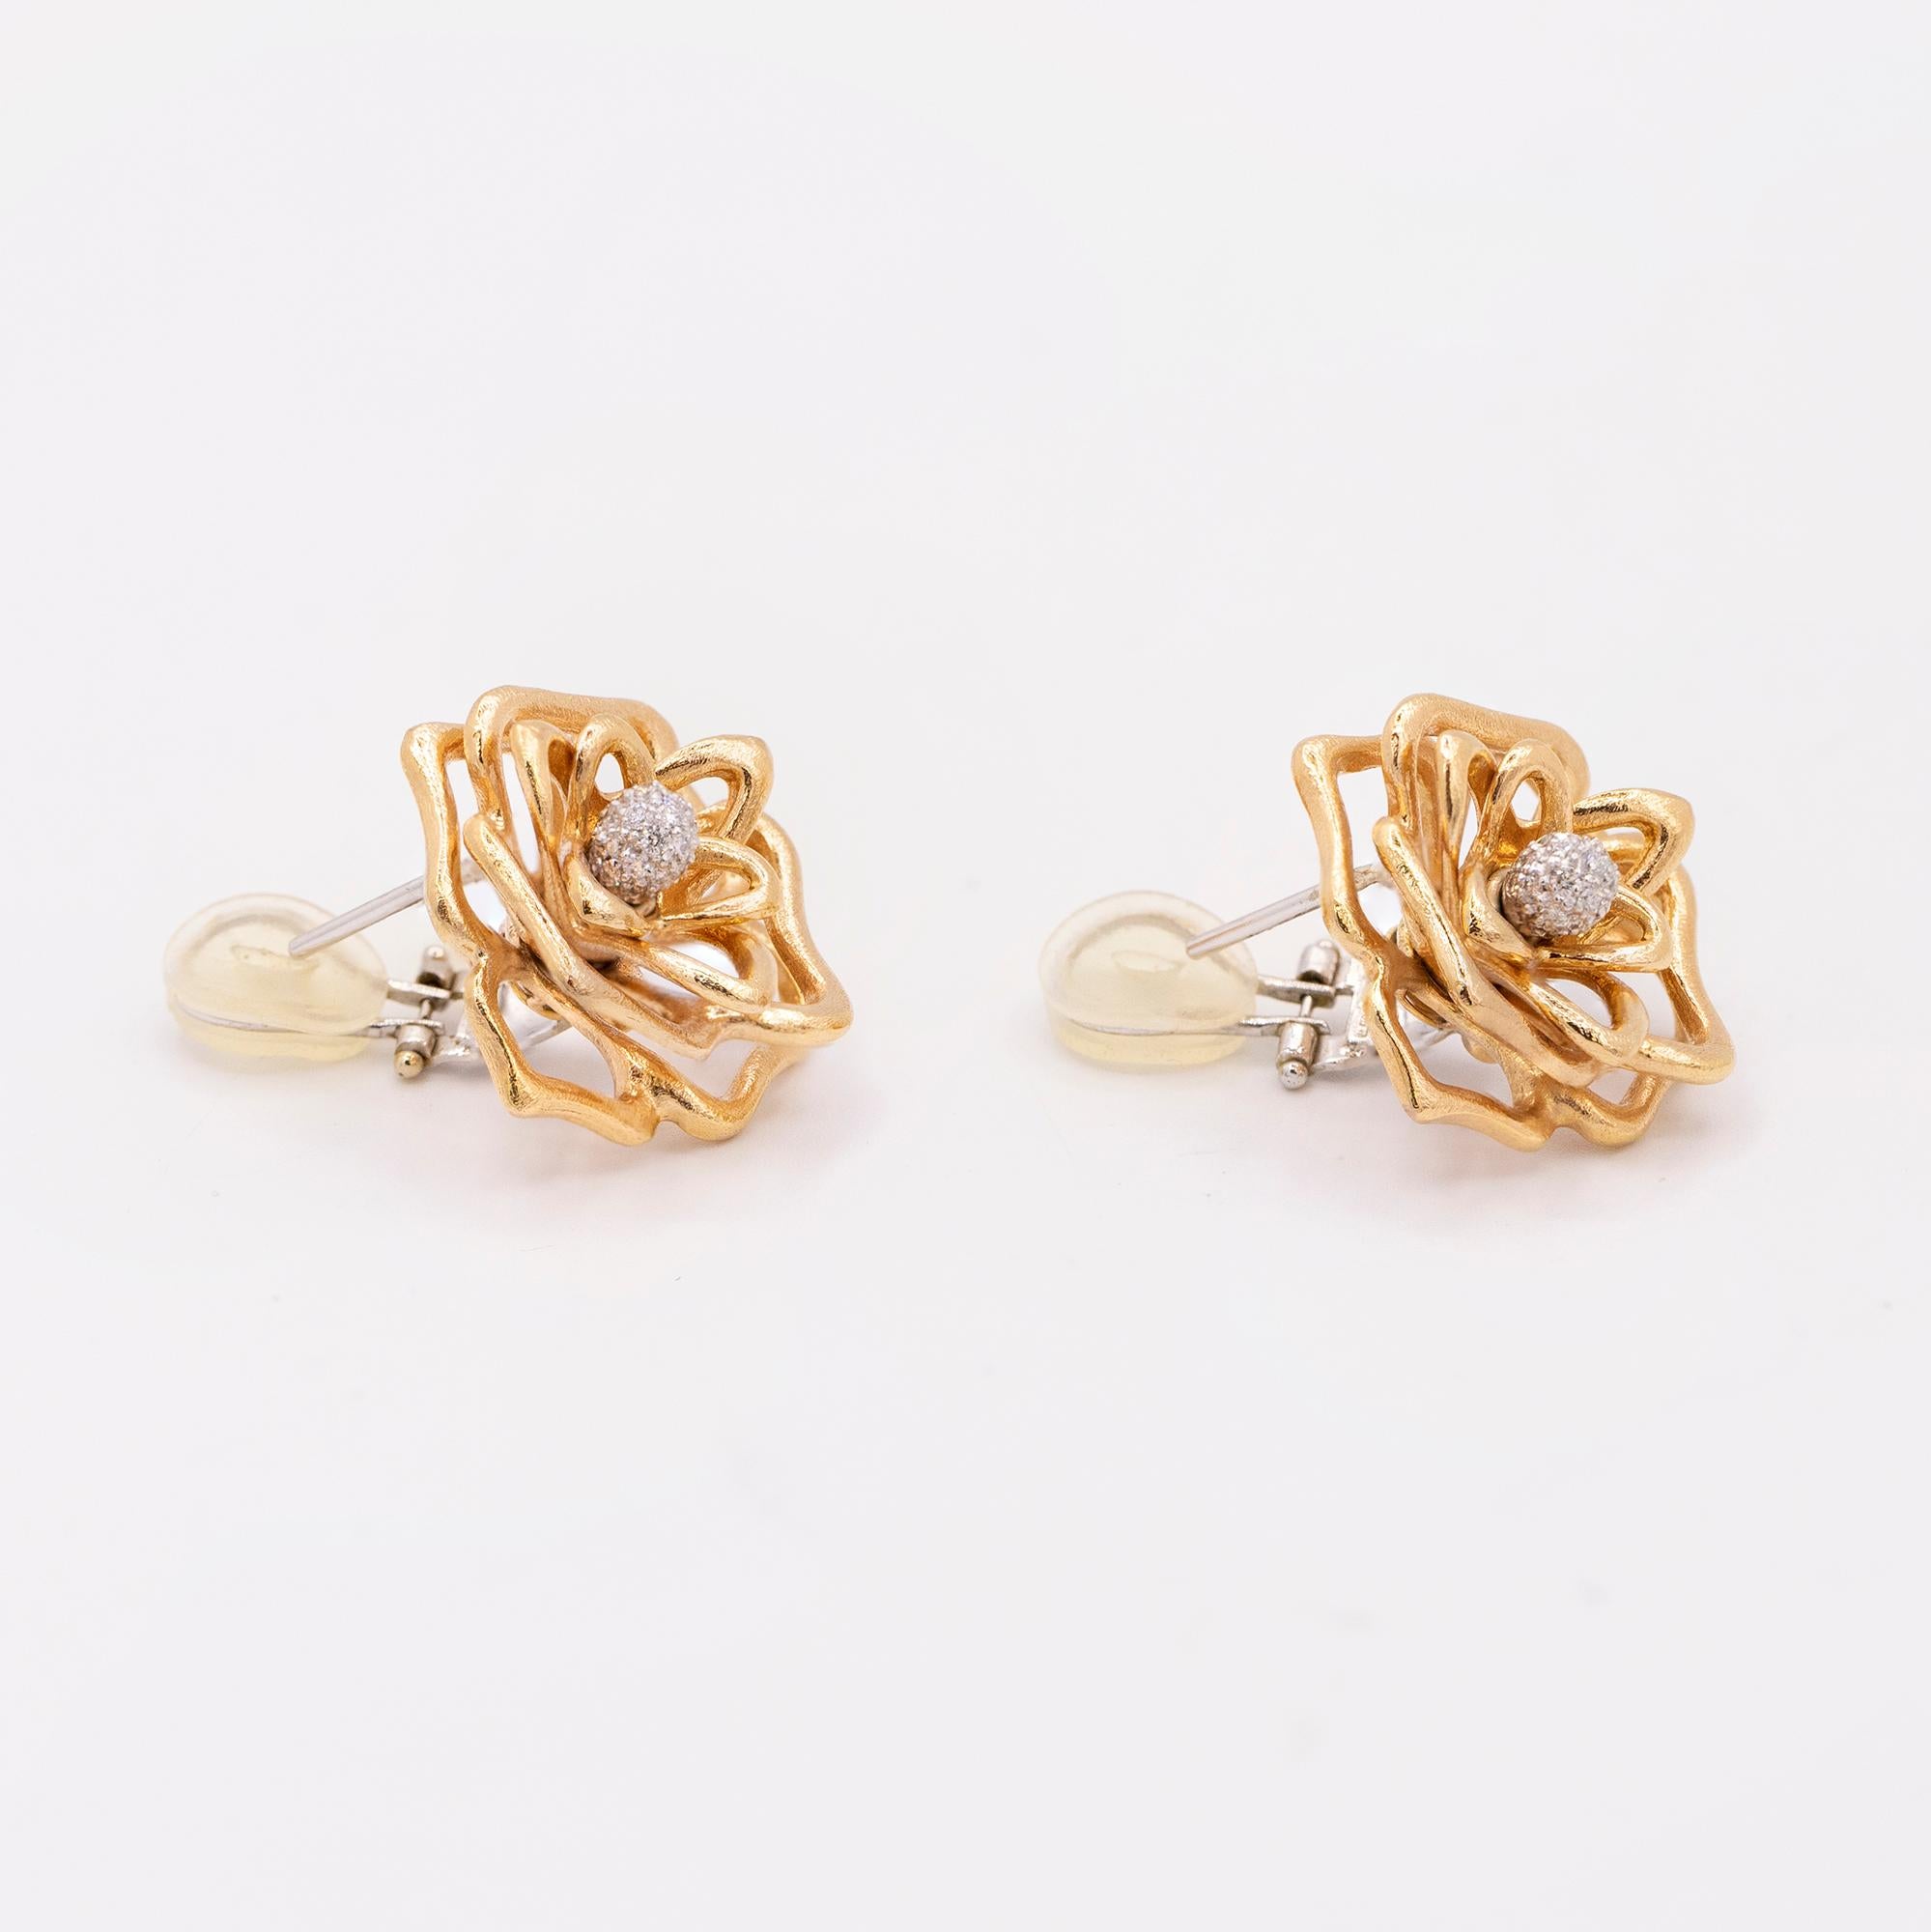 Boucles d'oreilles vintage Roberto Coin open Rose en or rose 18 carats avec perle centrale pavée de diamants
avec des dos post et oméga pour les oreilles percées.
